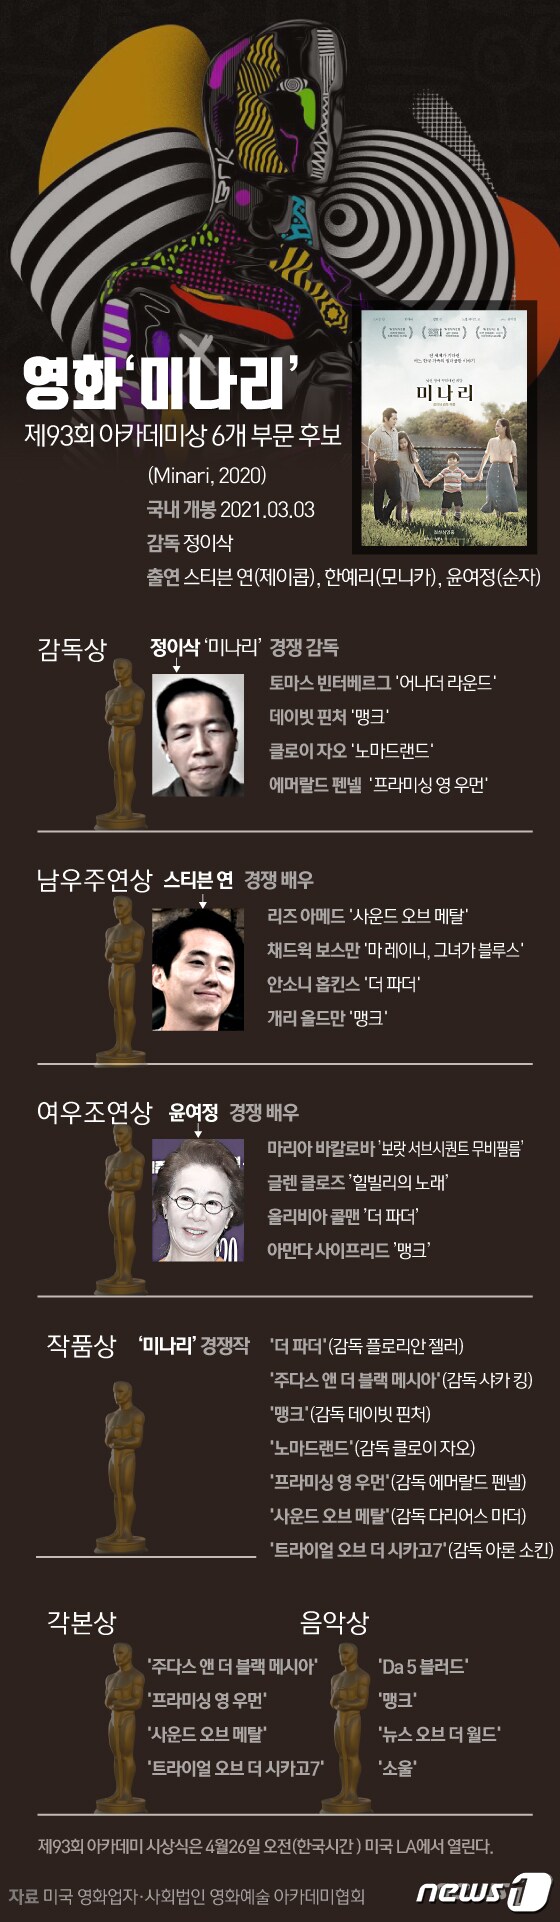 [그래픽뉴스] 영화'미나리' 아카데미상 6개 부문 후보